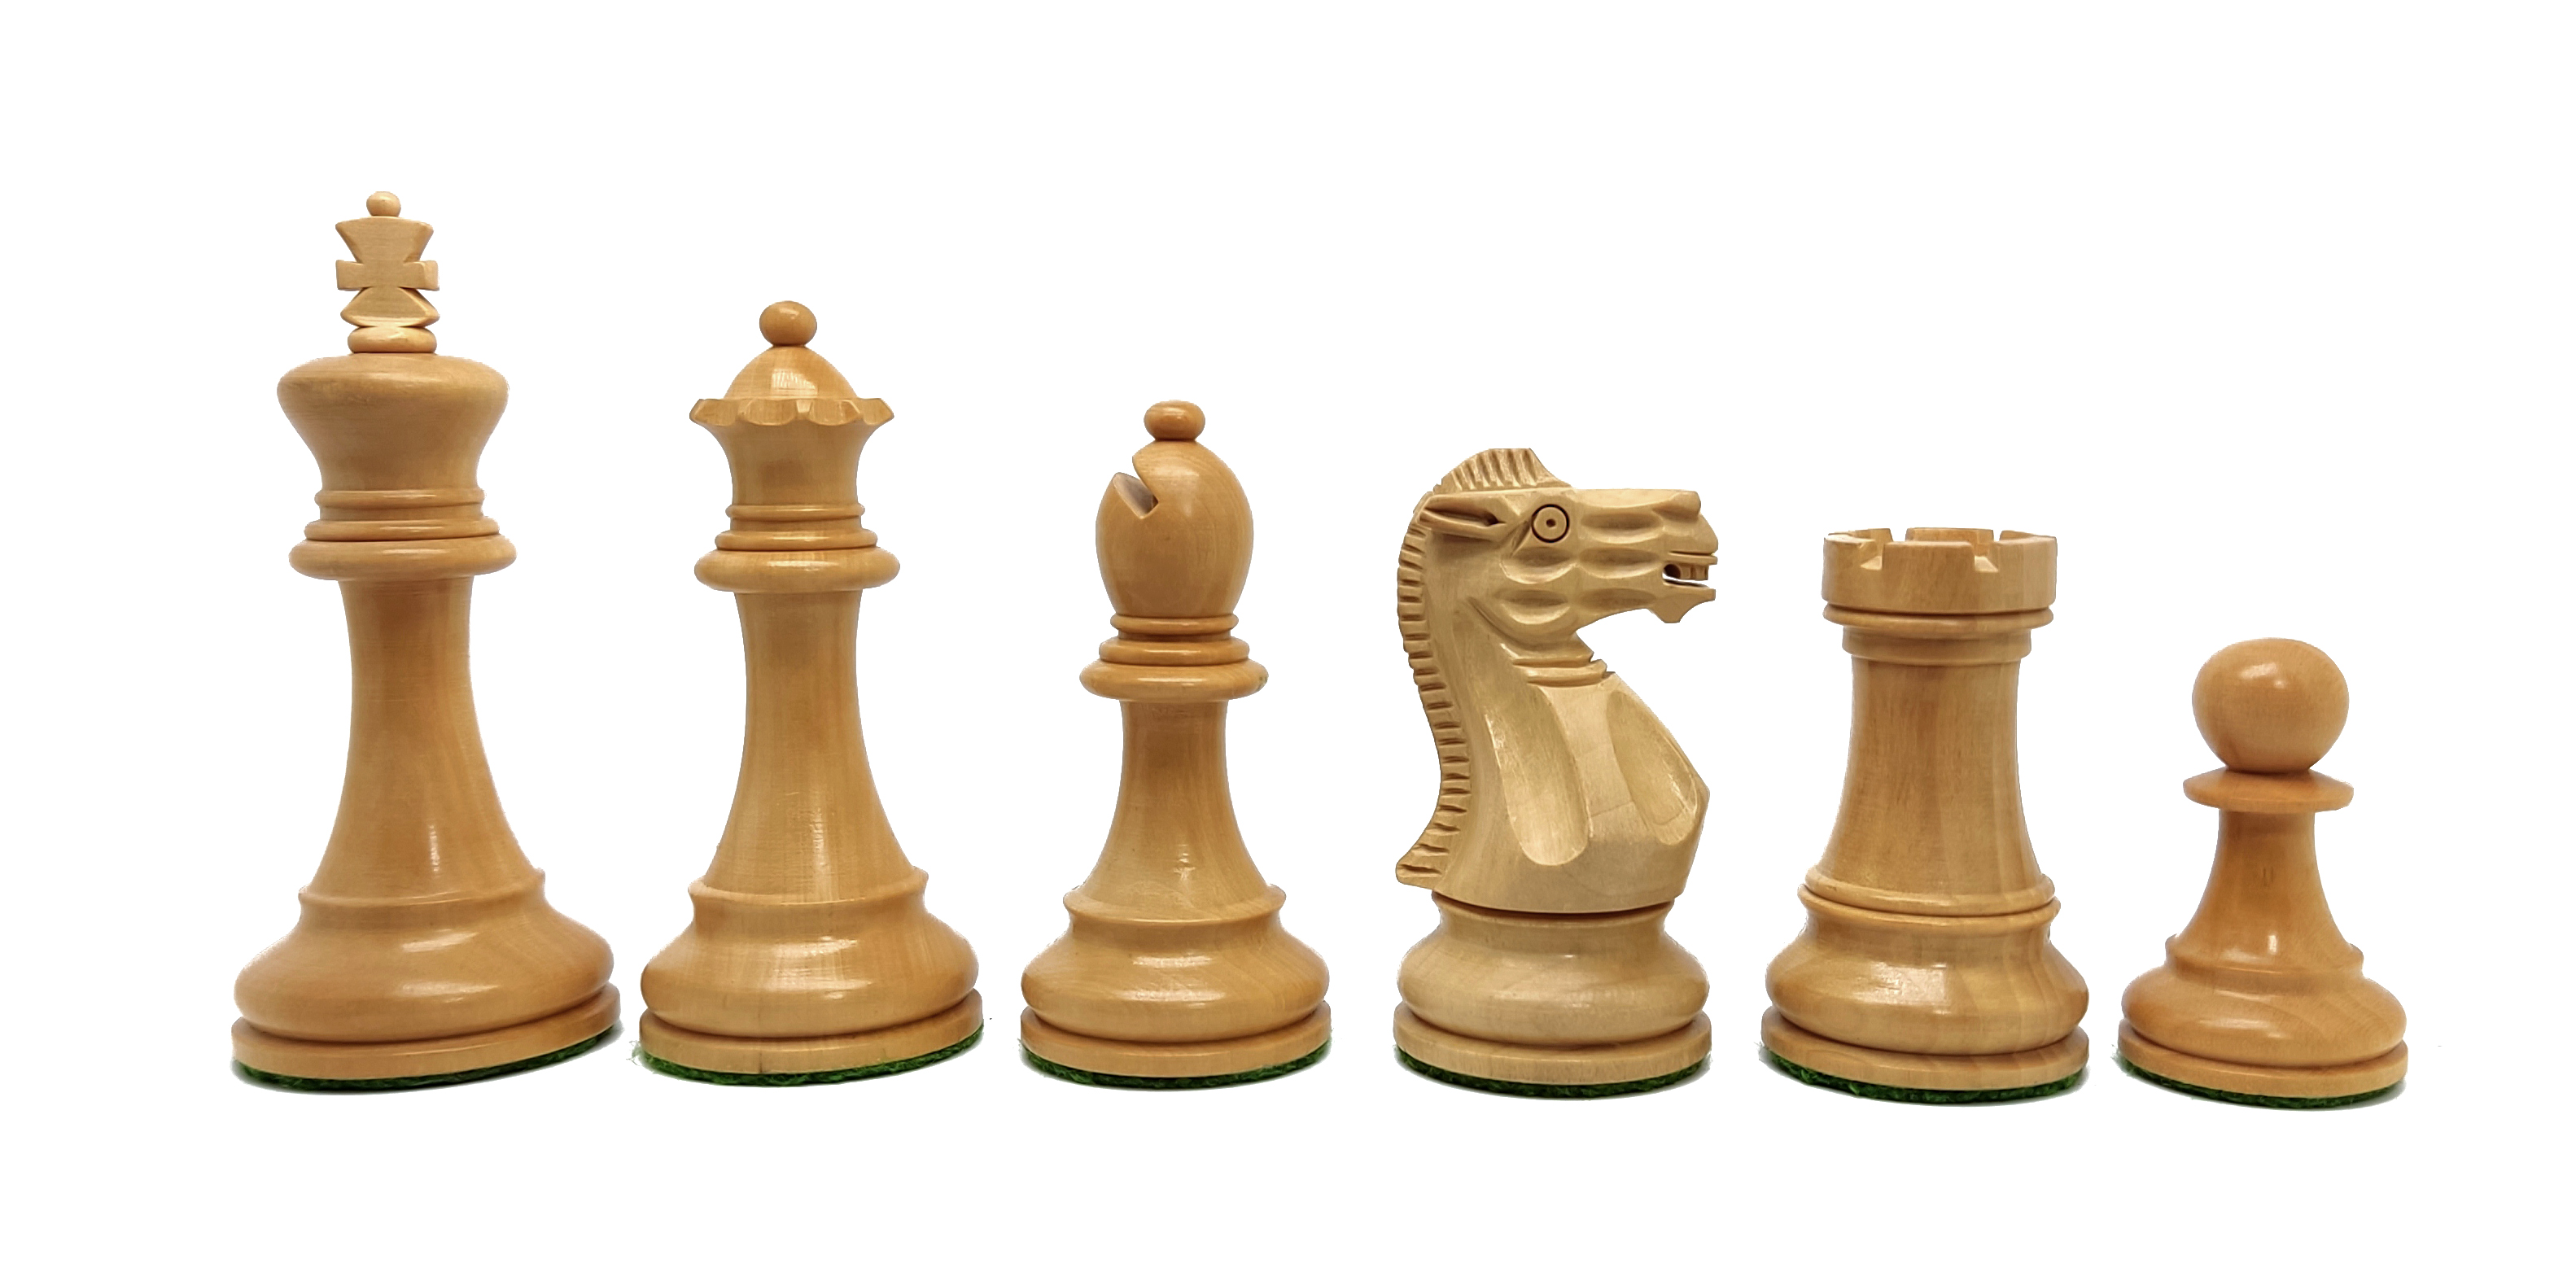 VI/ Piezas de ajedrez modelo Old English "3,50" Palo rosa.